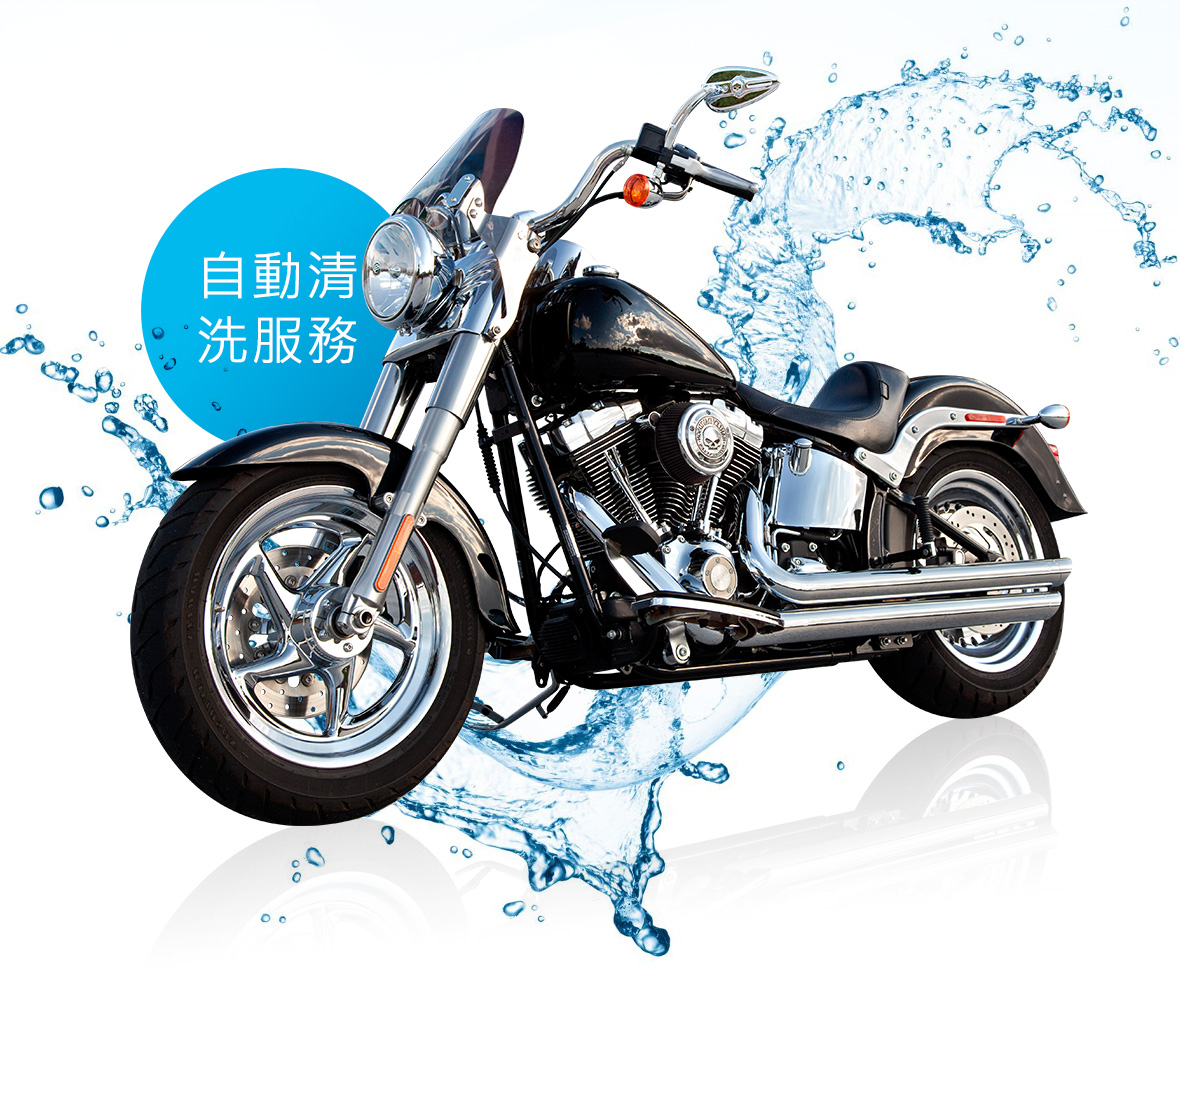 名辰國際Bike Spa全自動機車洗車機